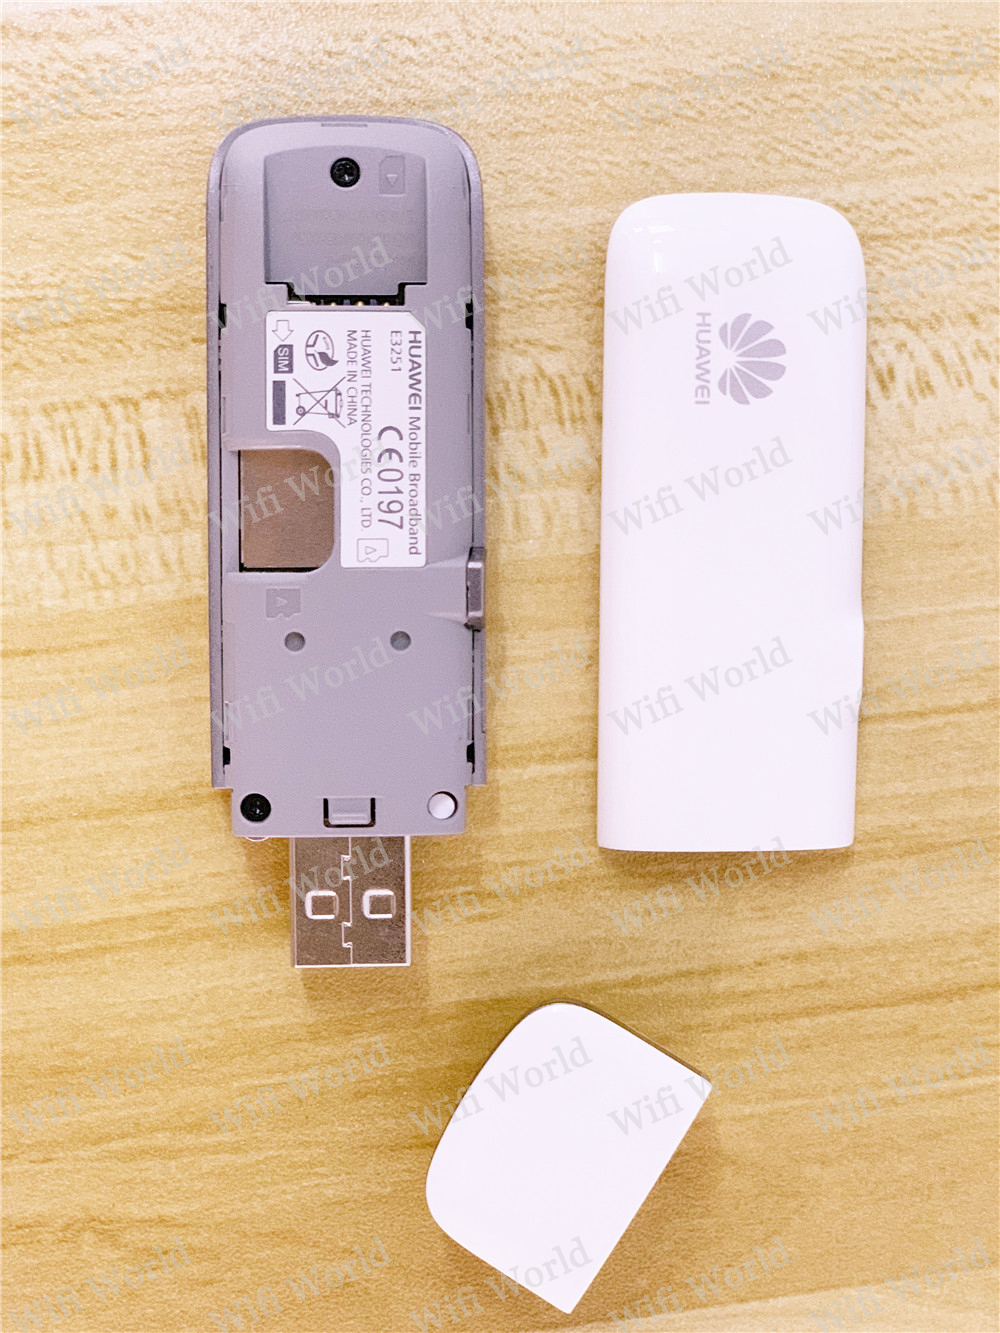 HUAWEI E3251 3.5G dongle HSPA + USB MODEM débloqué carte de données 42Mbps dongle + antenne